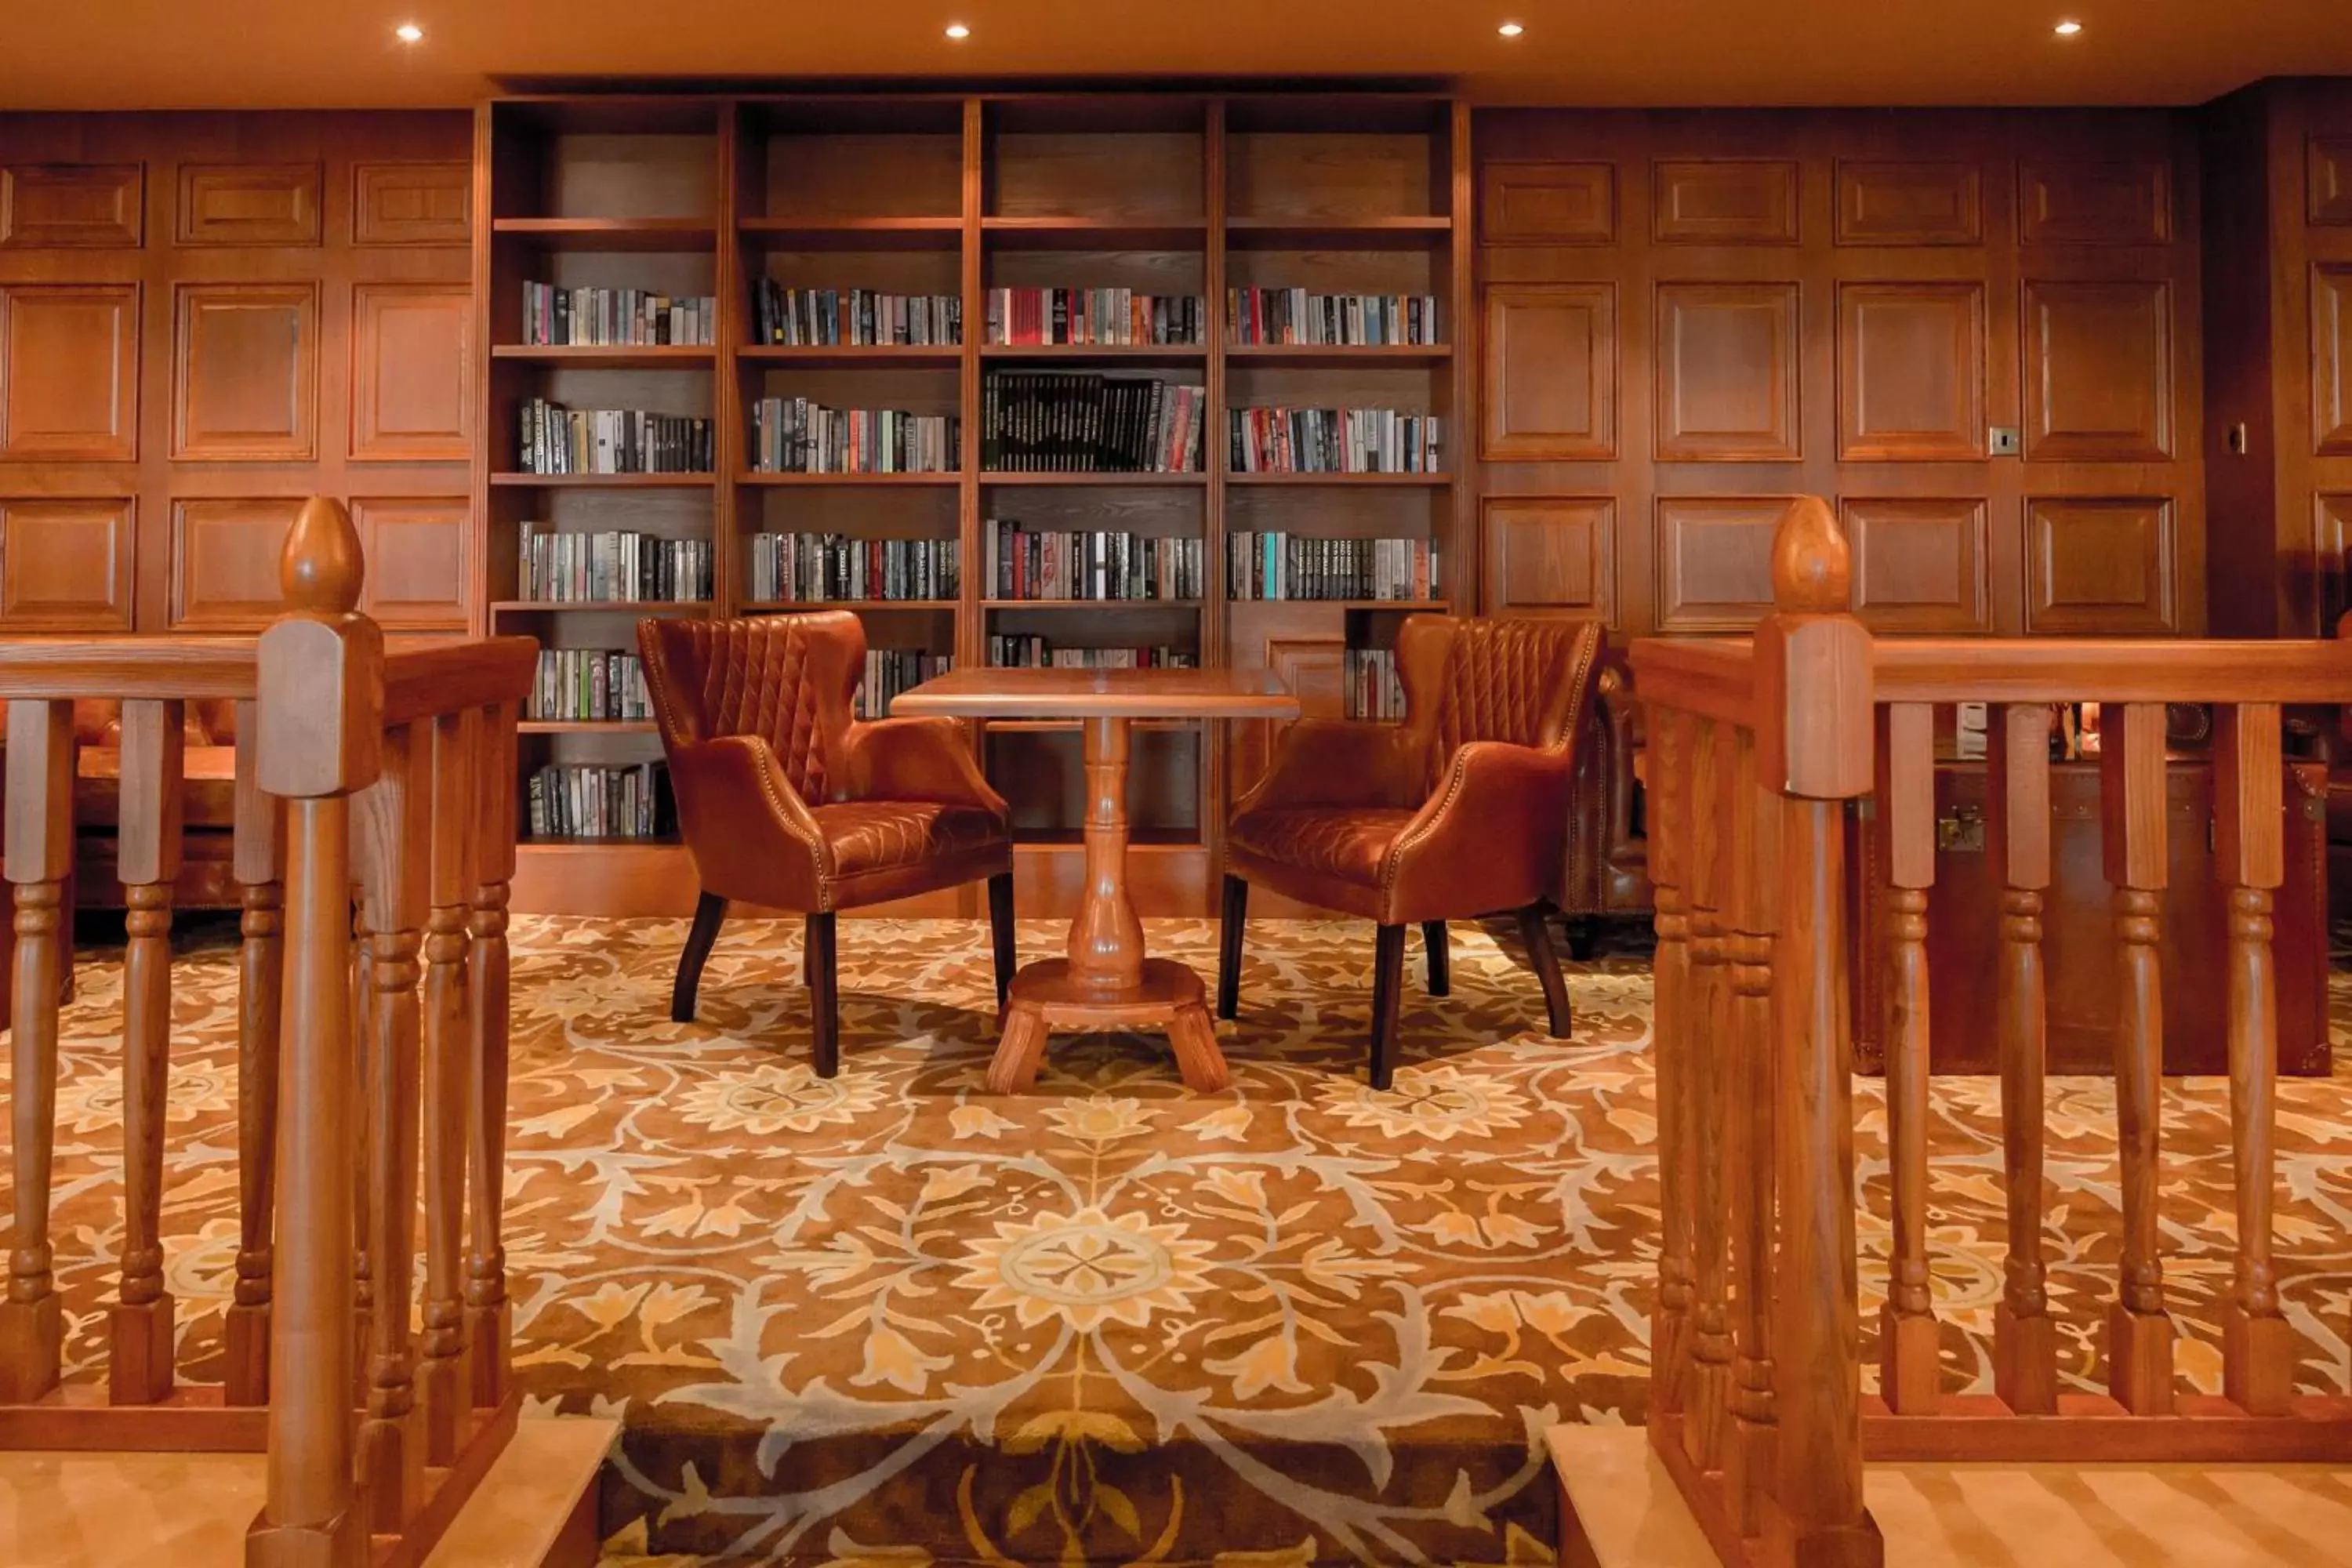 Library in The Glenburn Hotel